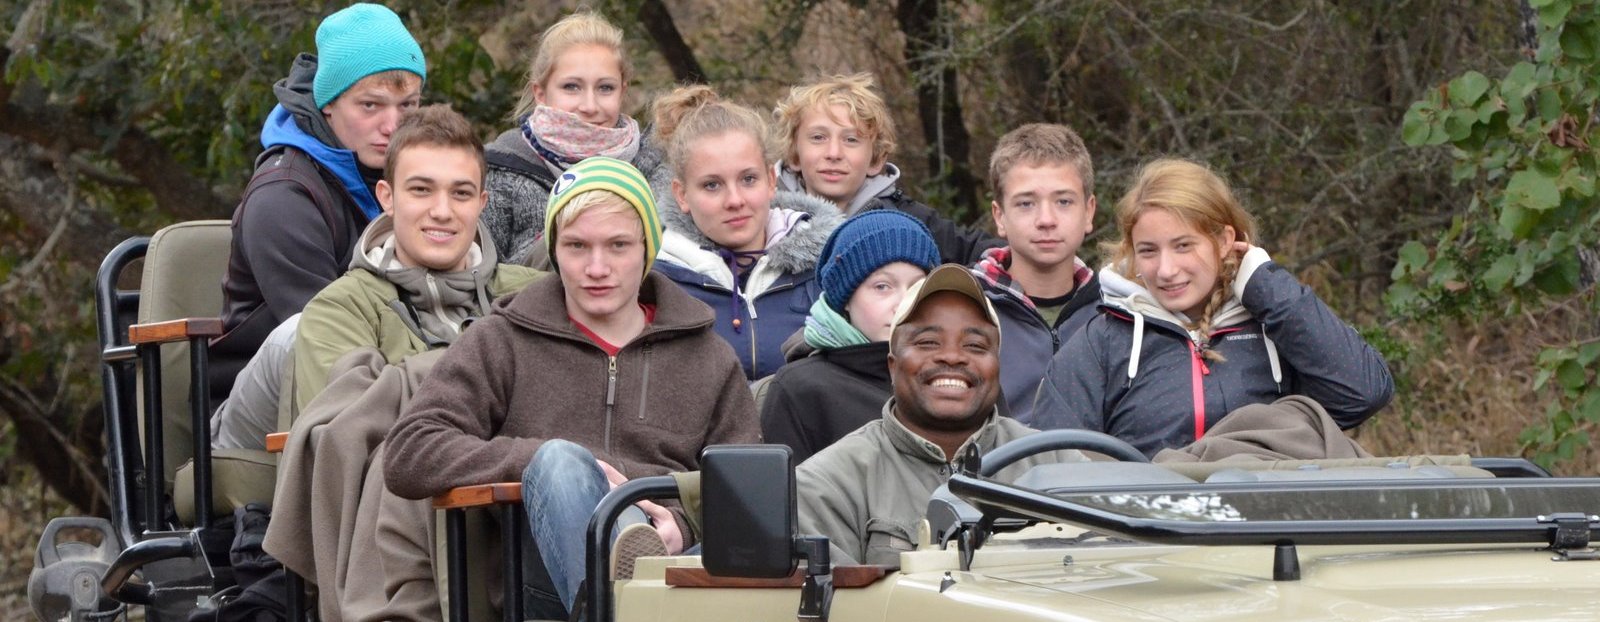 Südafrika mit Jugendlichen - Abenteuer, Kulturerlebnis & Safari mit Teenagern in Südafrika - Tagessafari mit Jugendlichen 